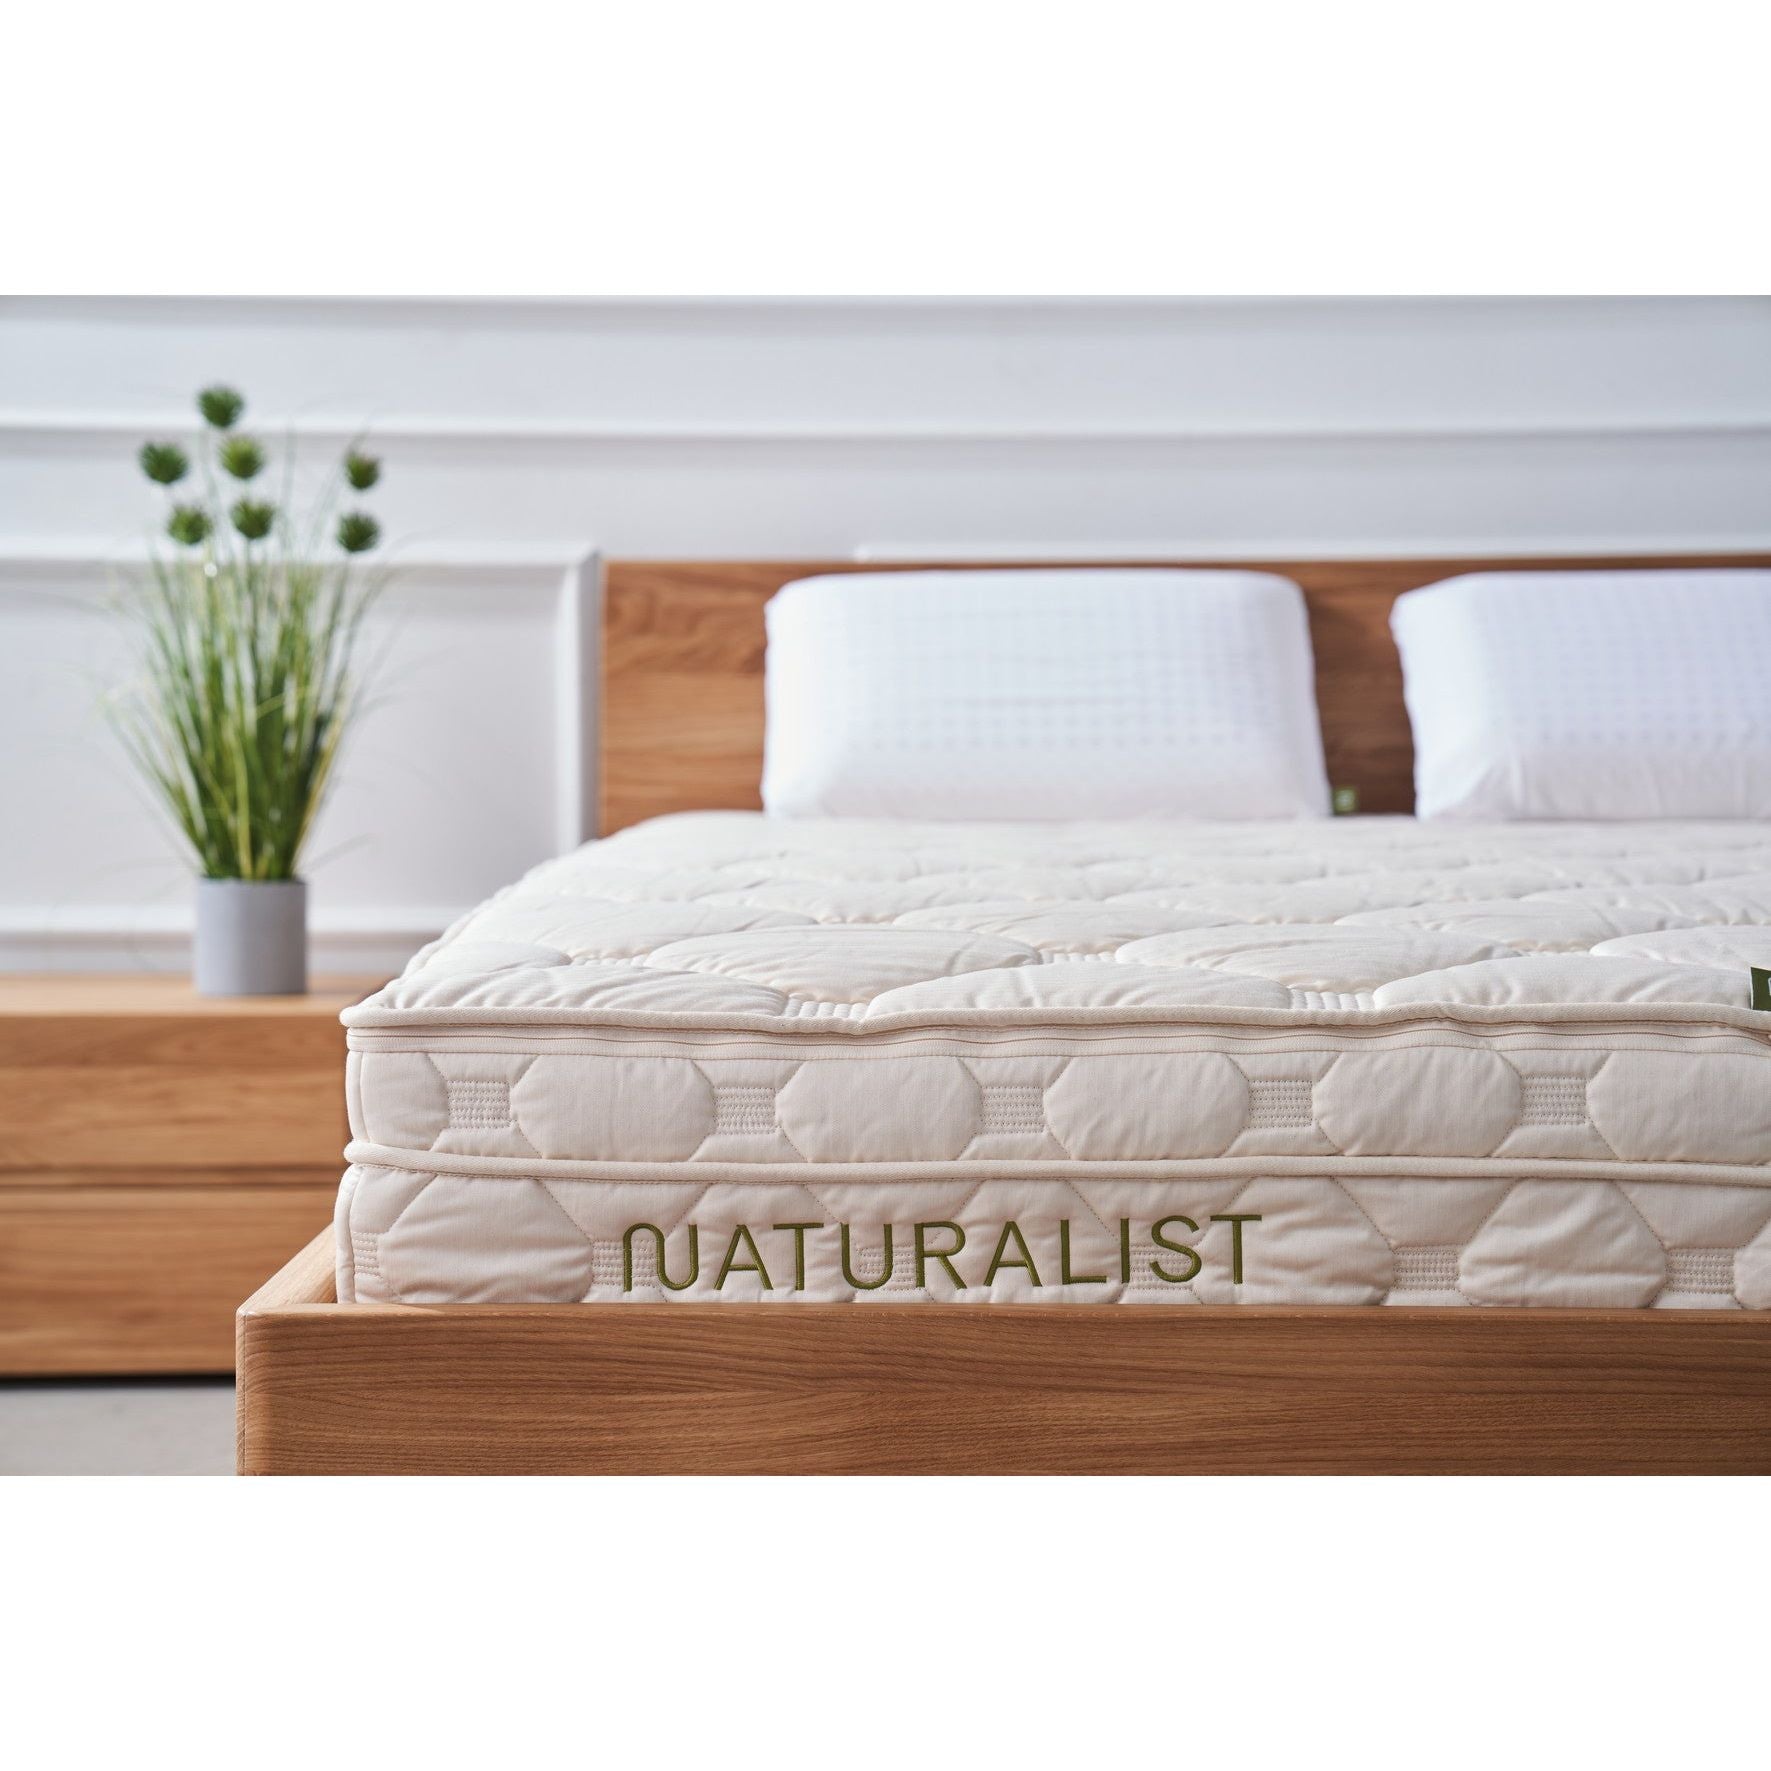 Bild mit Bettvorstellung inklusive Matratze in einem Zimmer